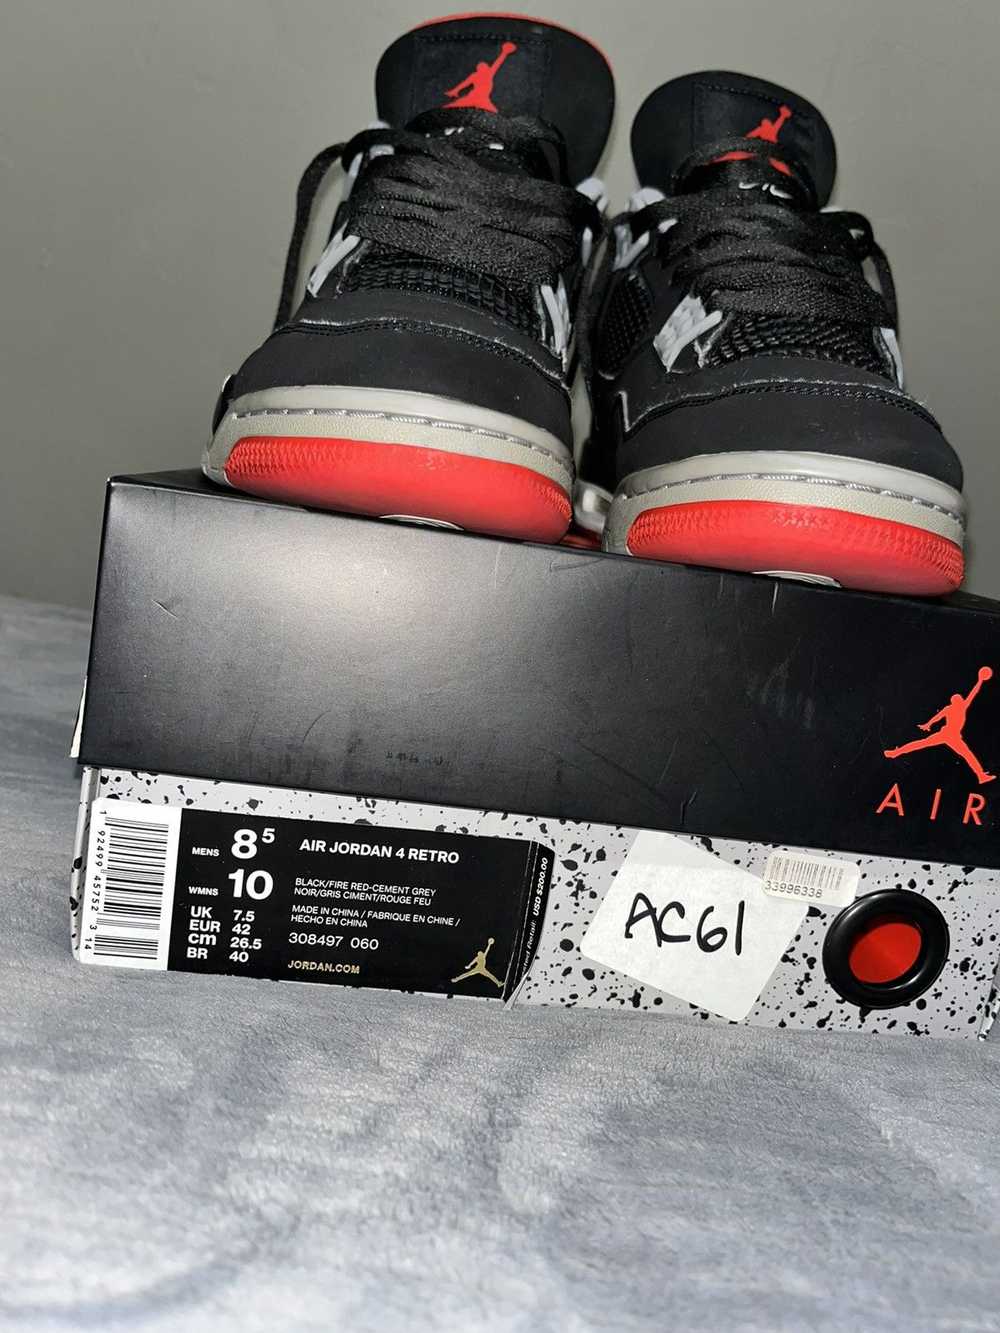 Jordan Brand × Nike Air Jordan retro 4 bred - image 10